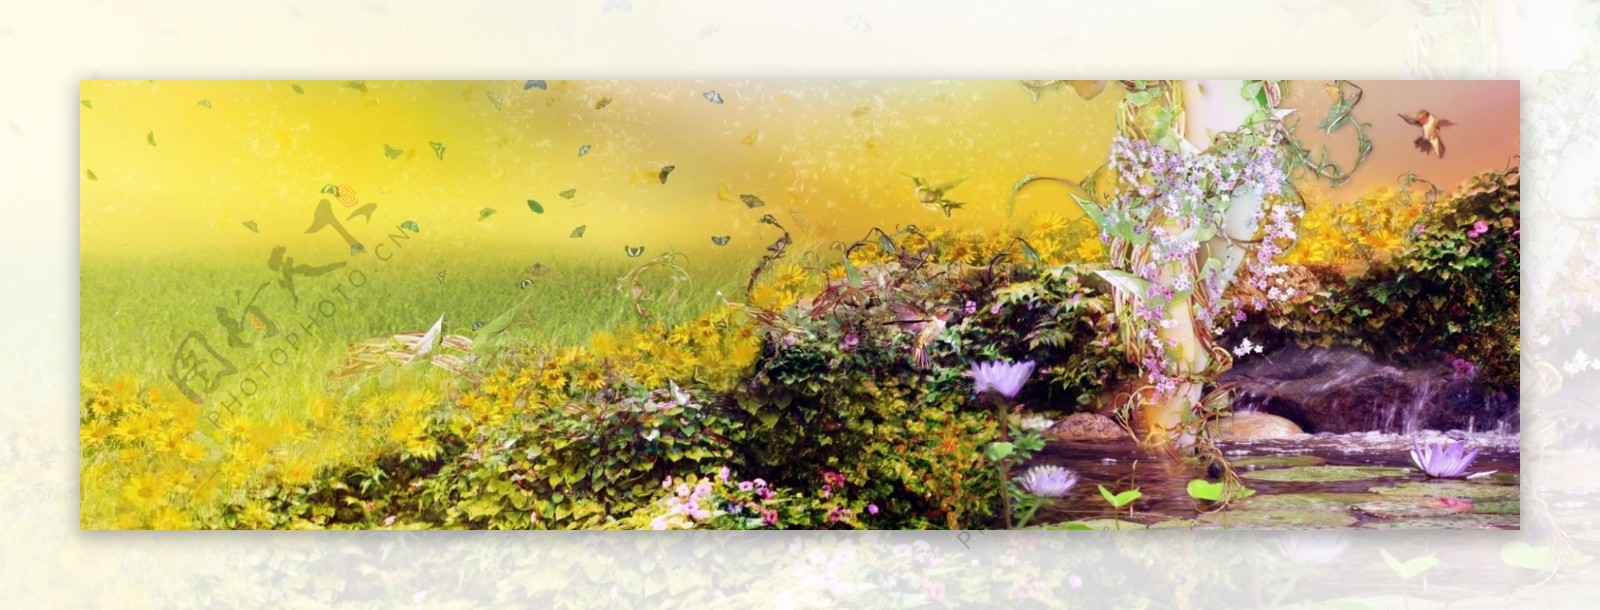 油画花卉海报背景素材图片